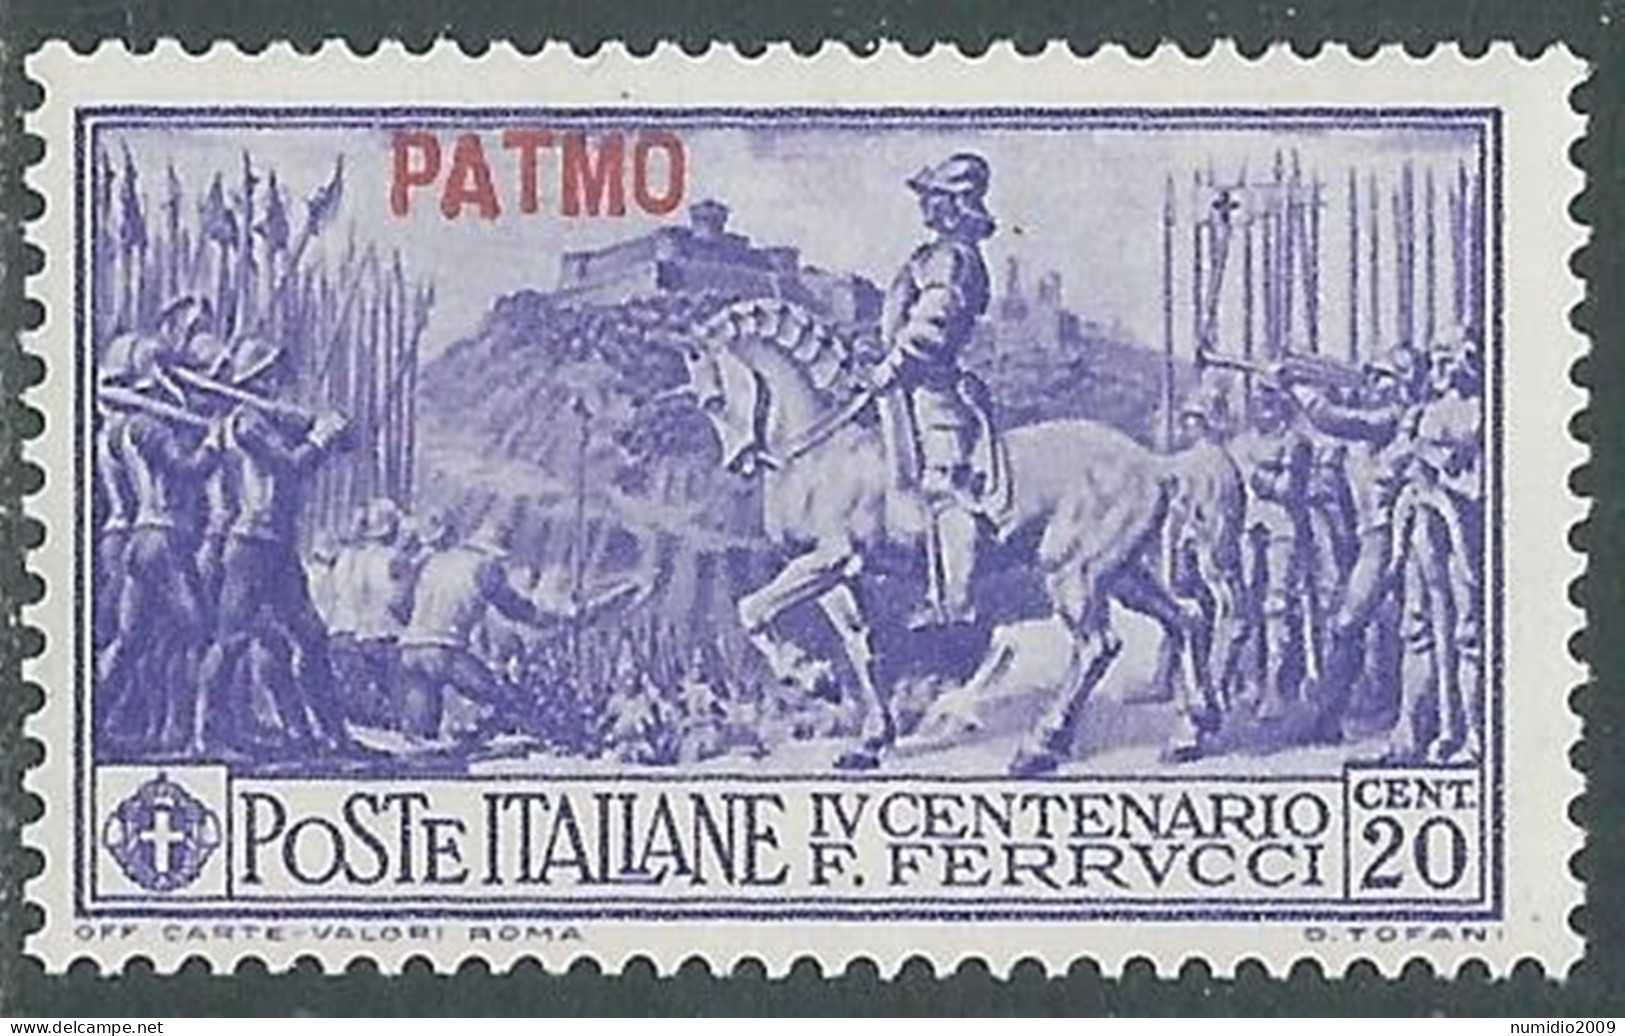 1930 EGEO PATMO FERRUCCI 20 CENT MH * - I45-5 - Ägäis (Patmo)